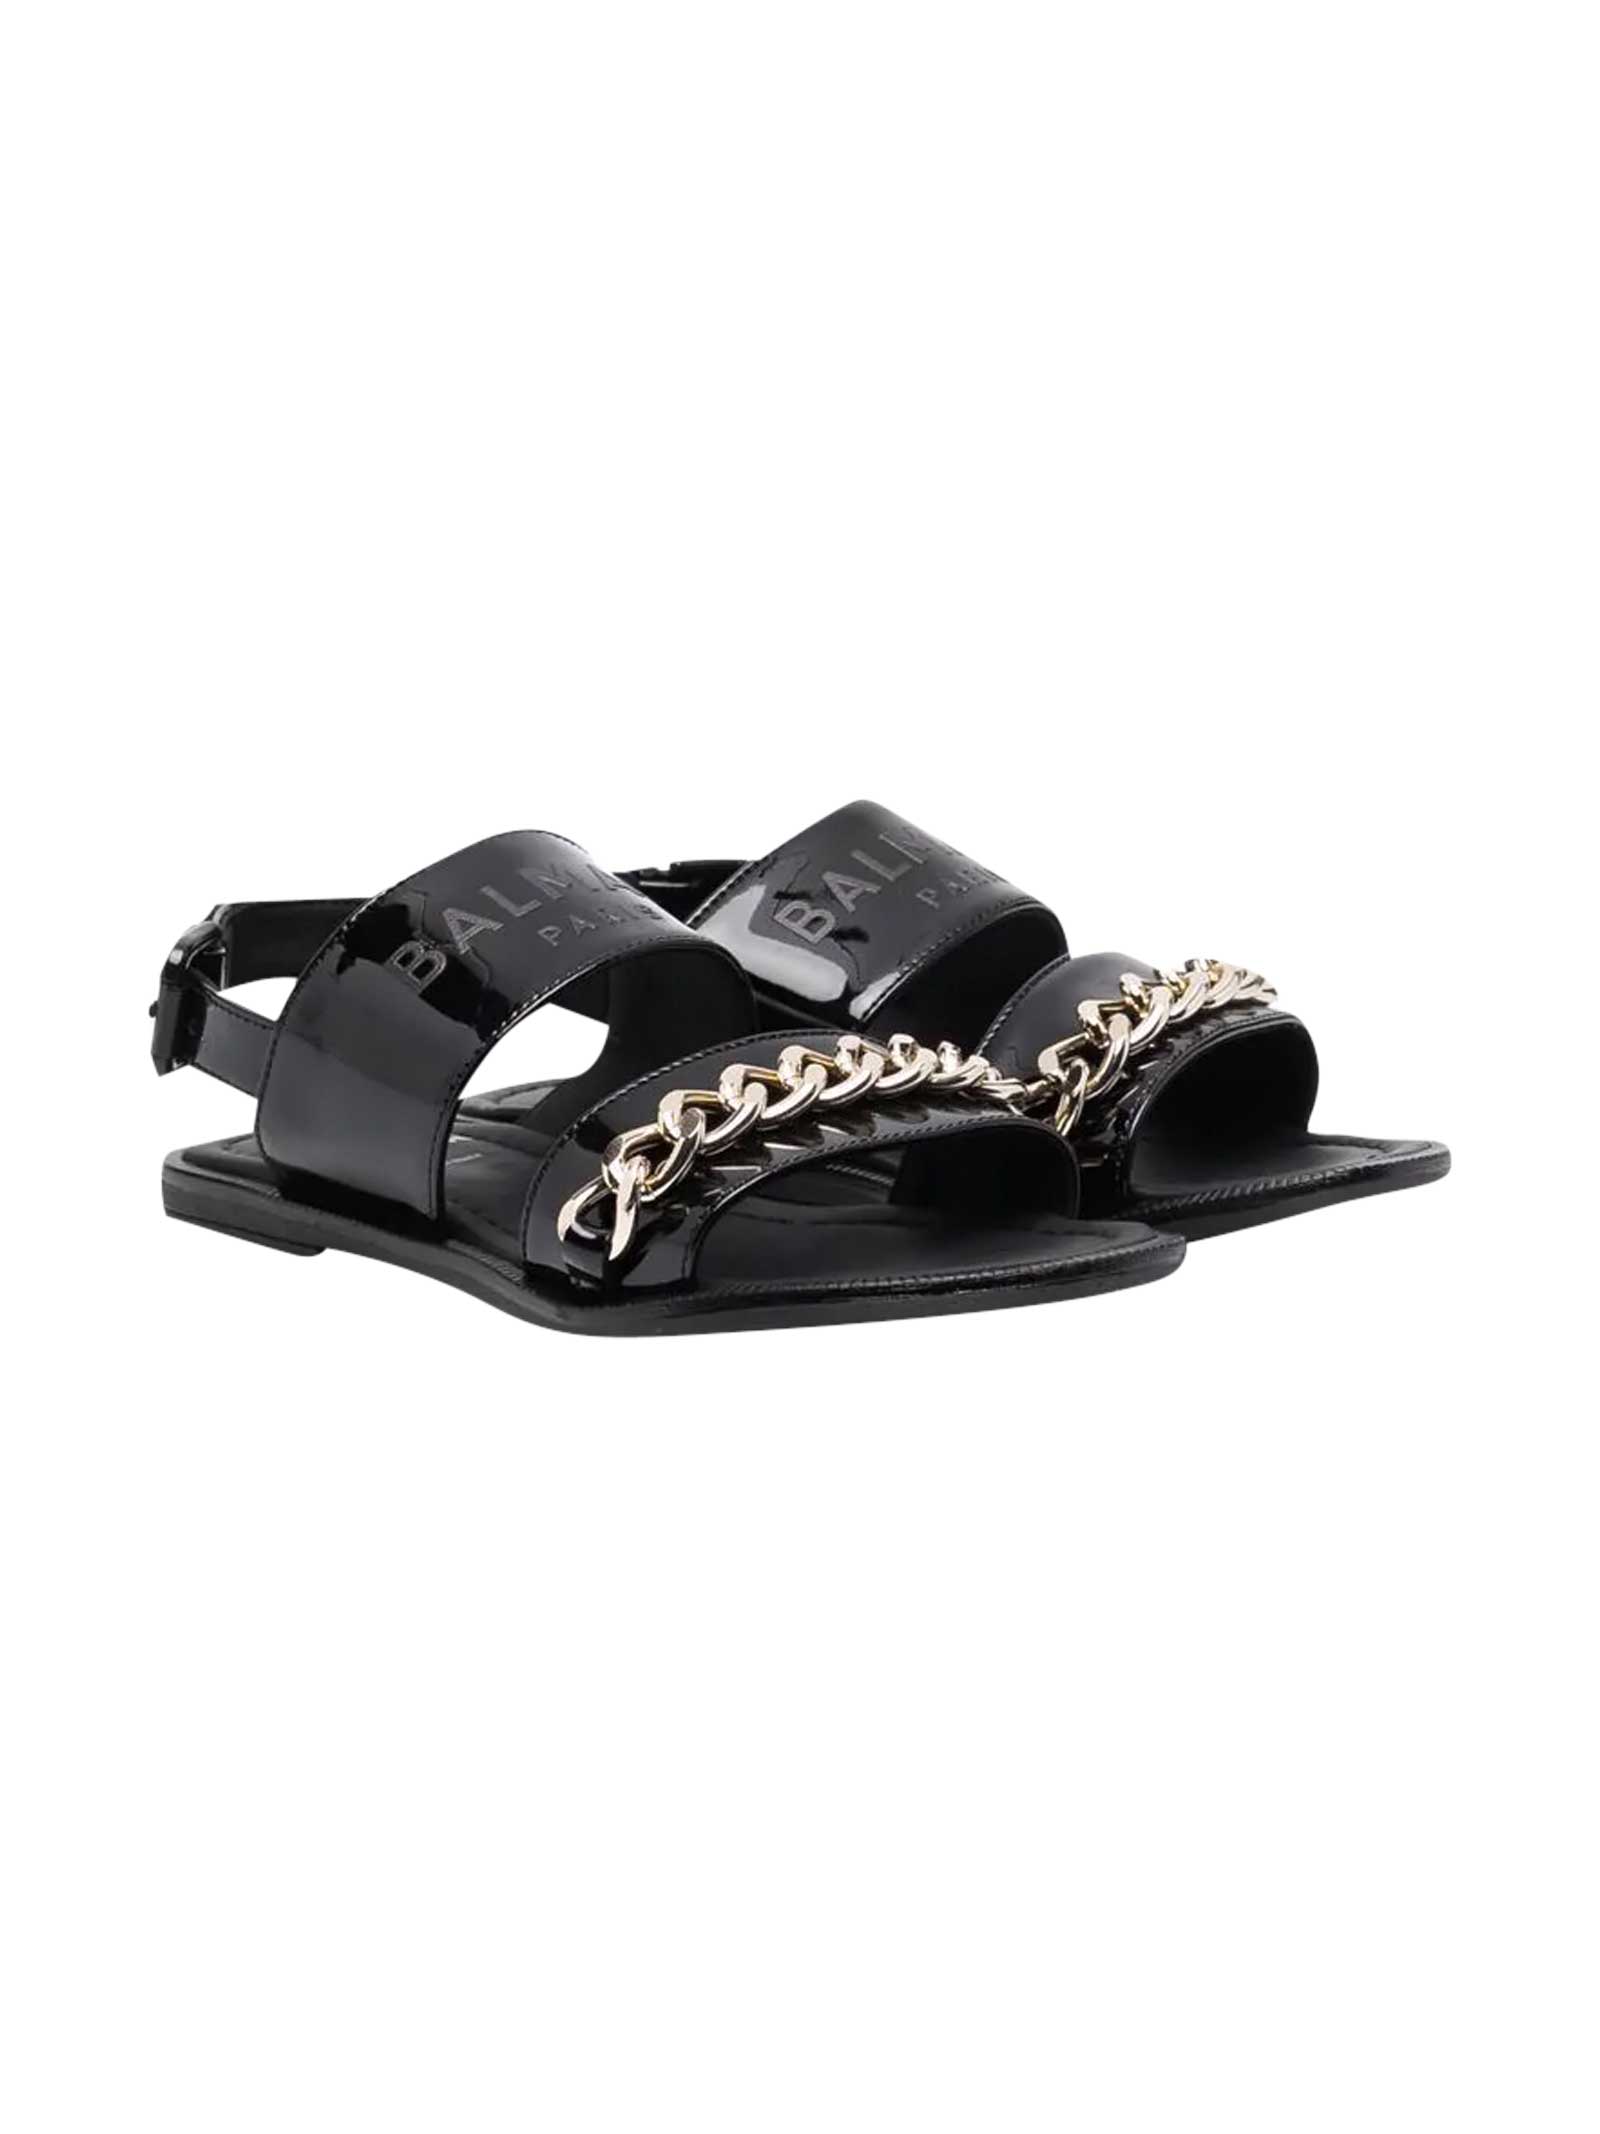 Balmain Sandals With Chain Detail